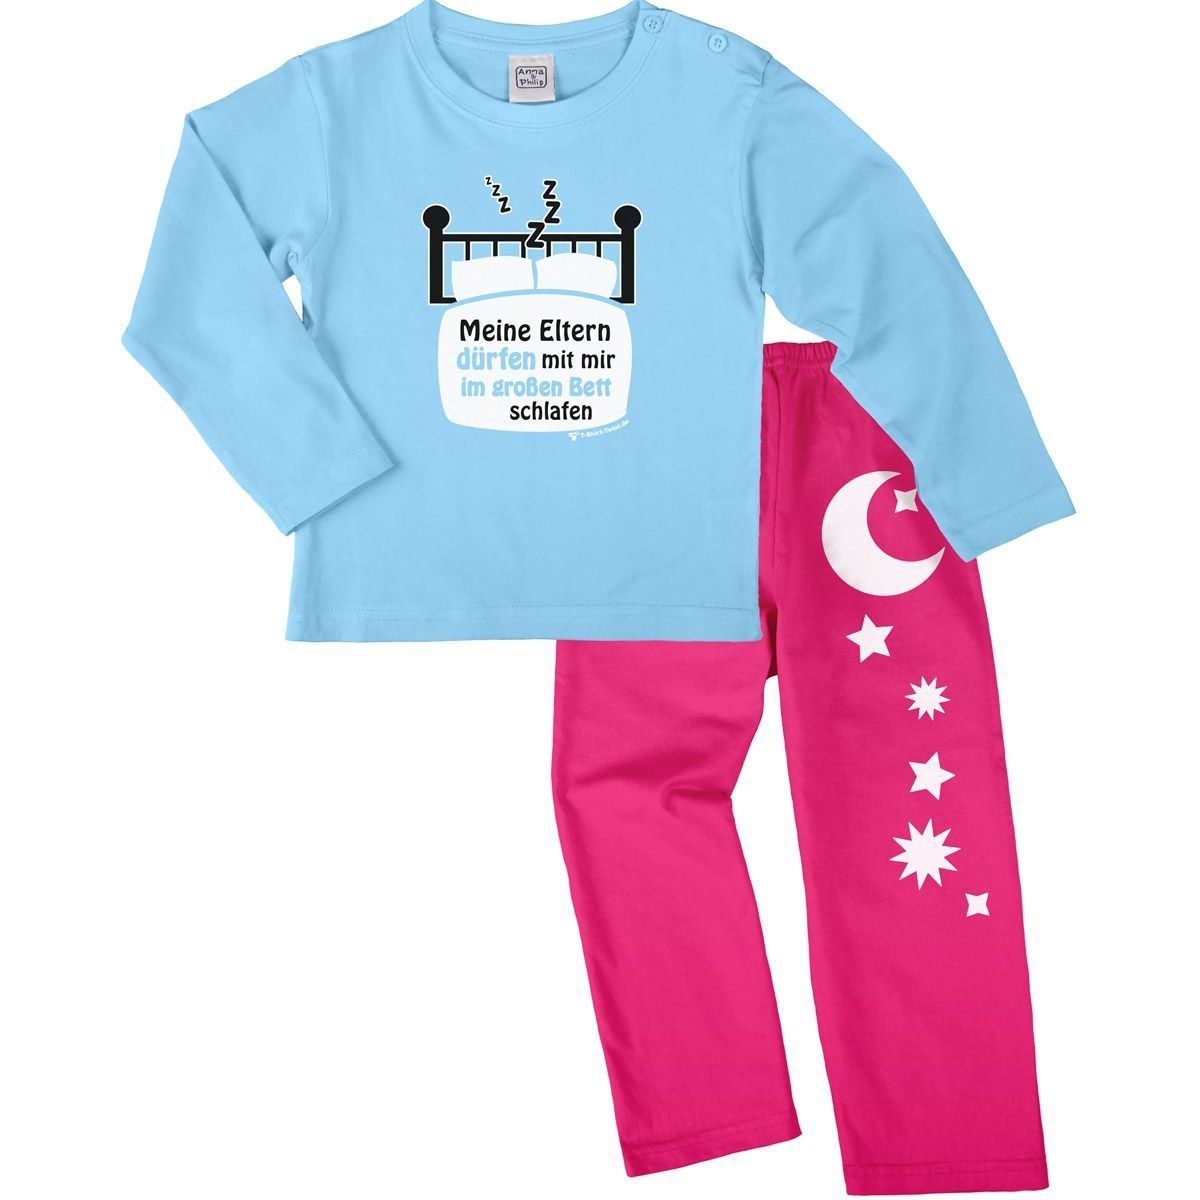 Im großen Bett schlafen Pyjama Set hellblau / pink 110 / 116